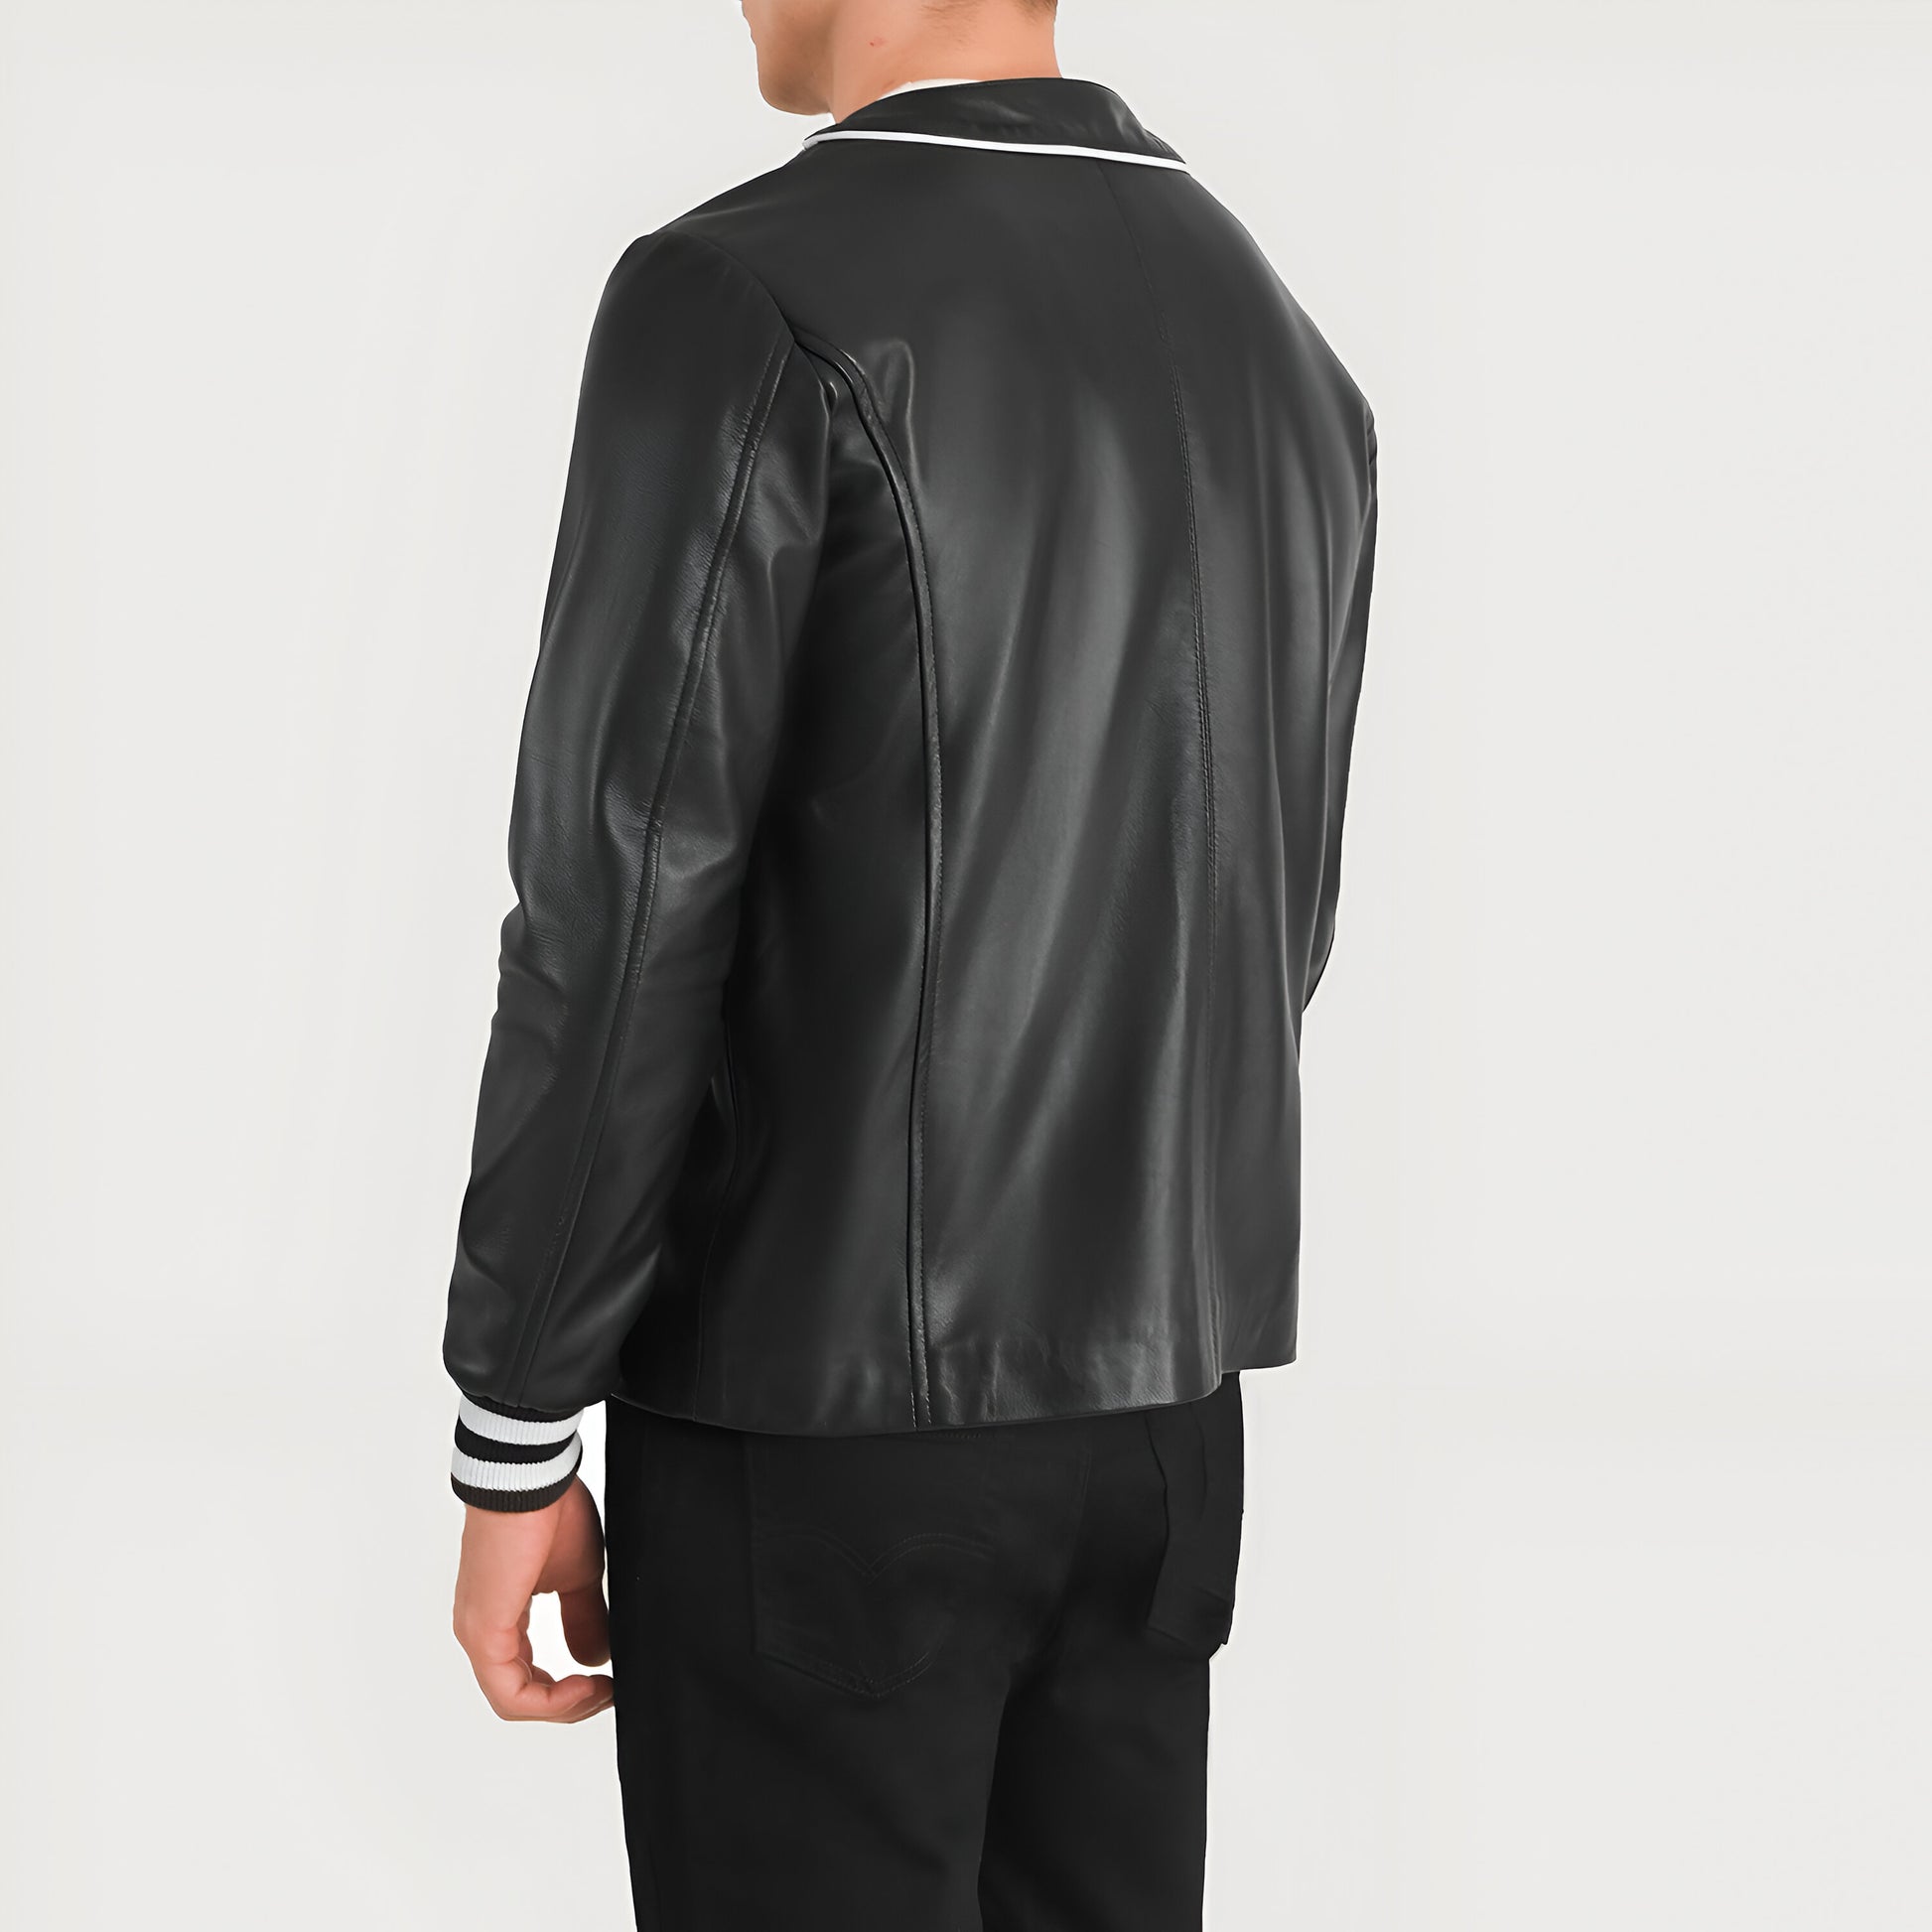 Mariano Rivera Black Leather Varsity Jacket